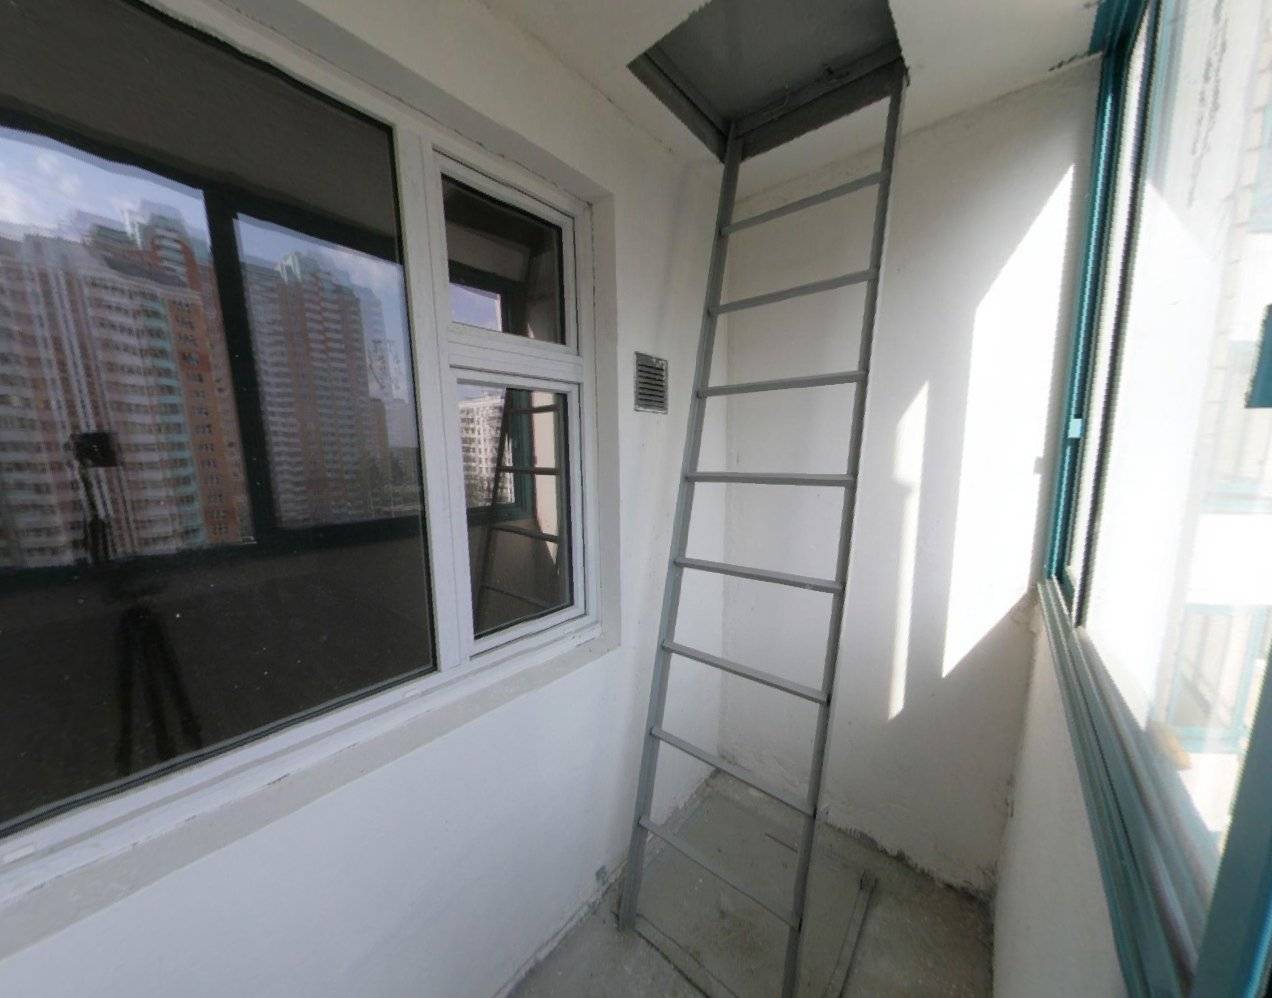 Пожарная лестница на балконе: что делать, можно ли спилить или убрать